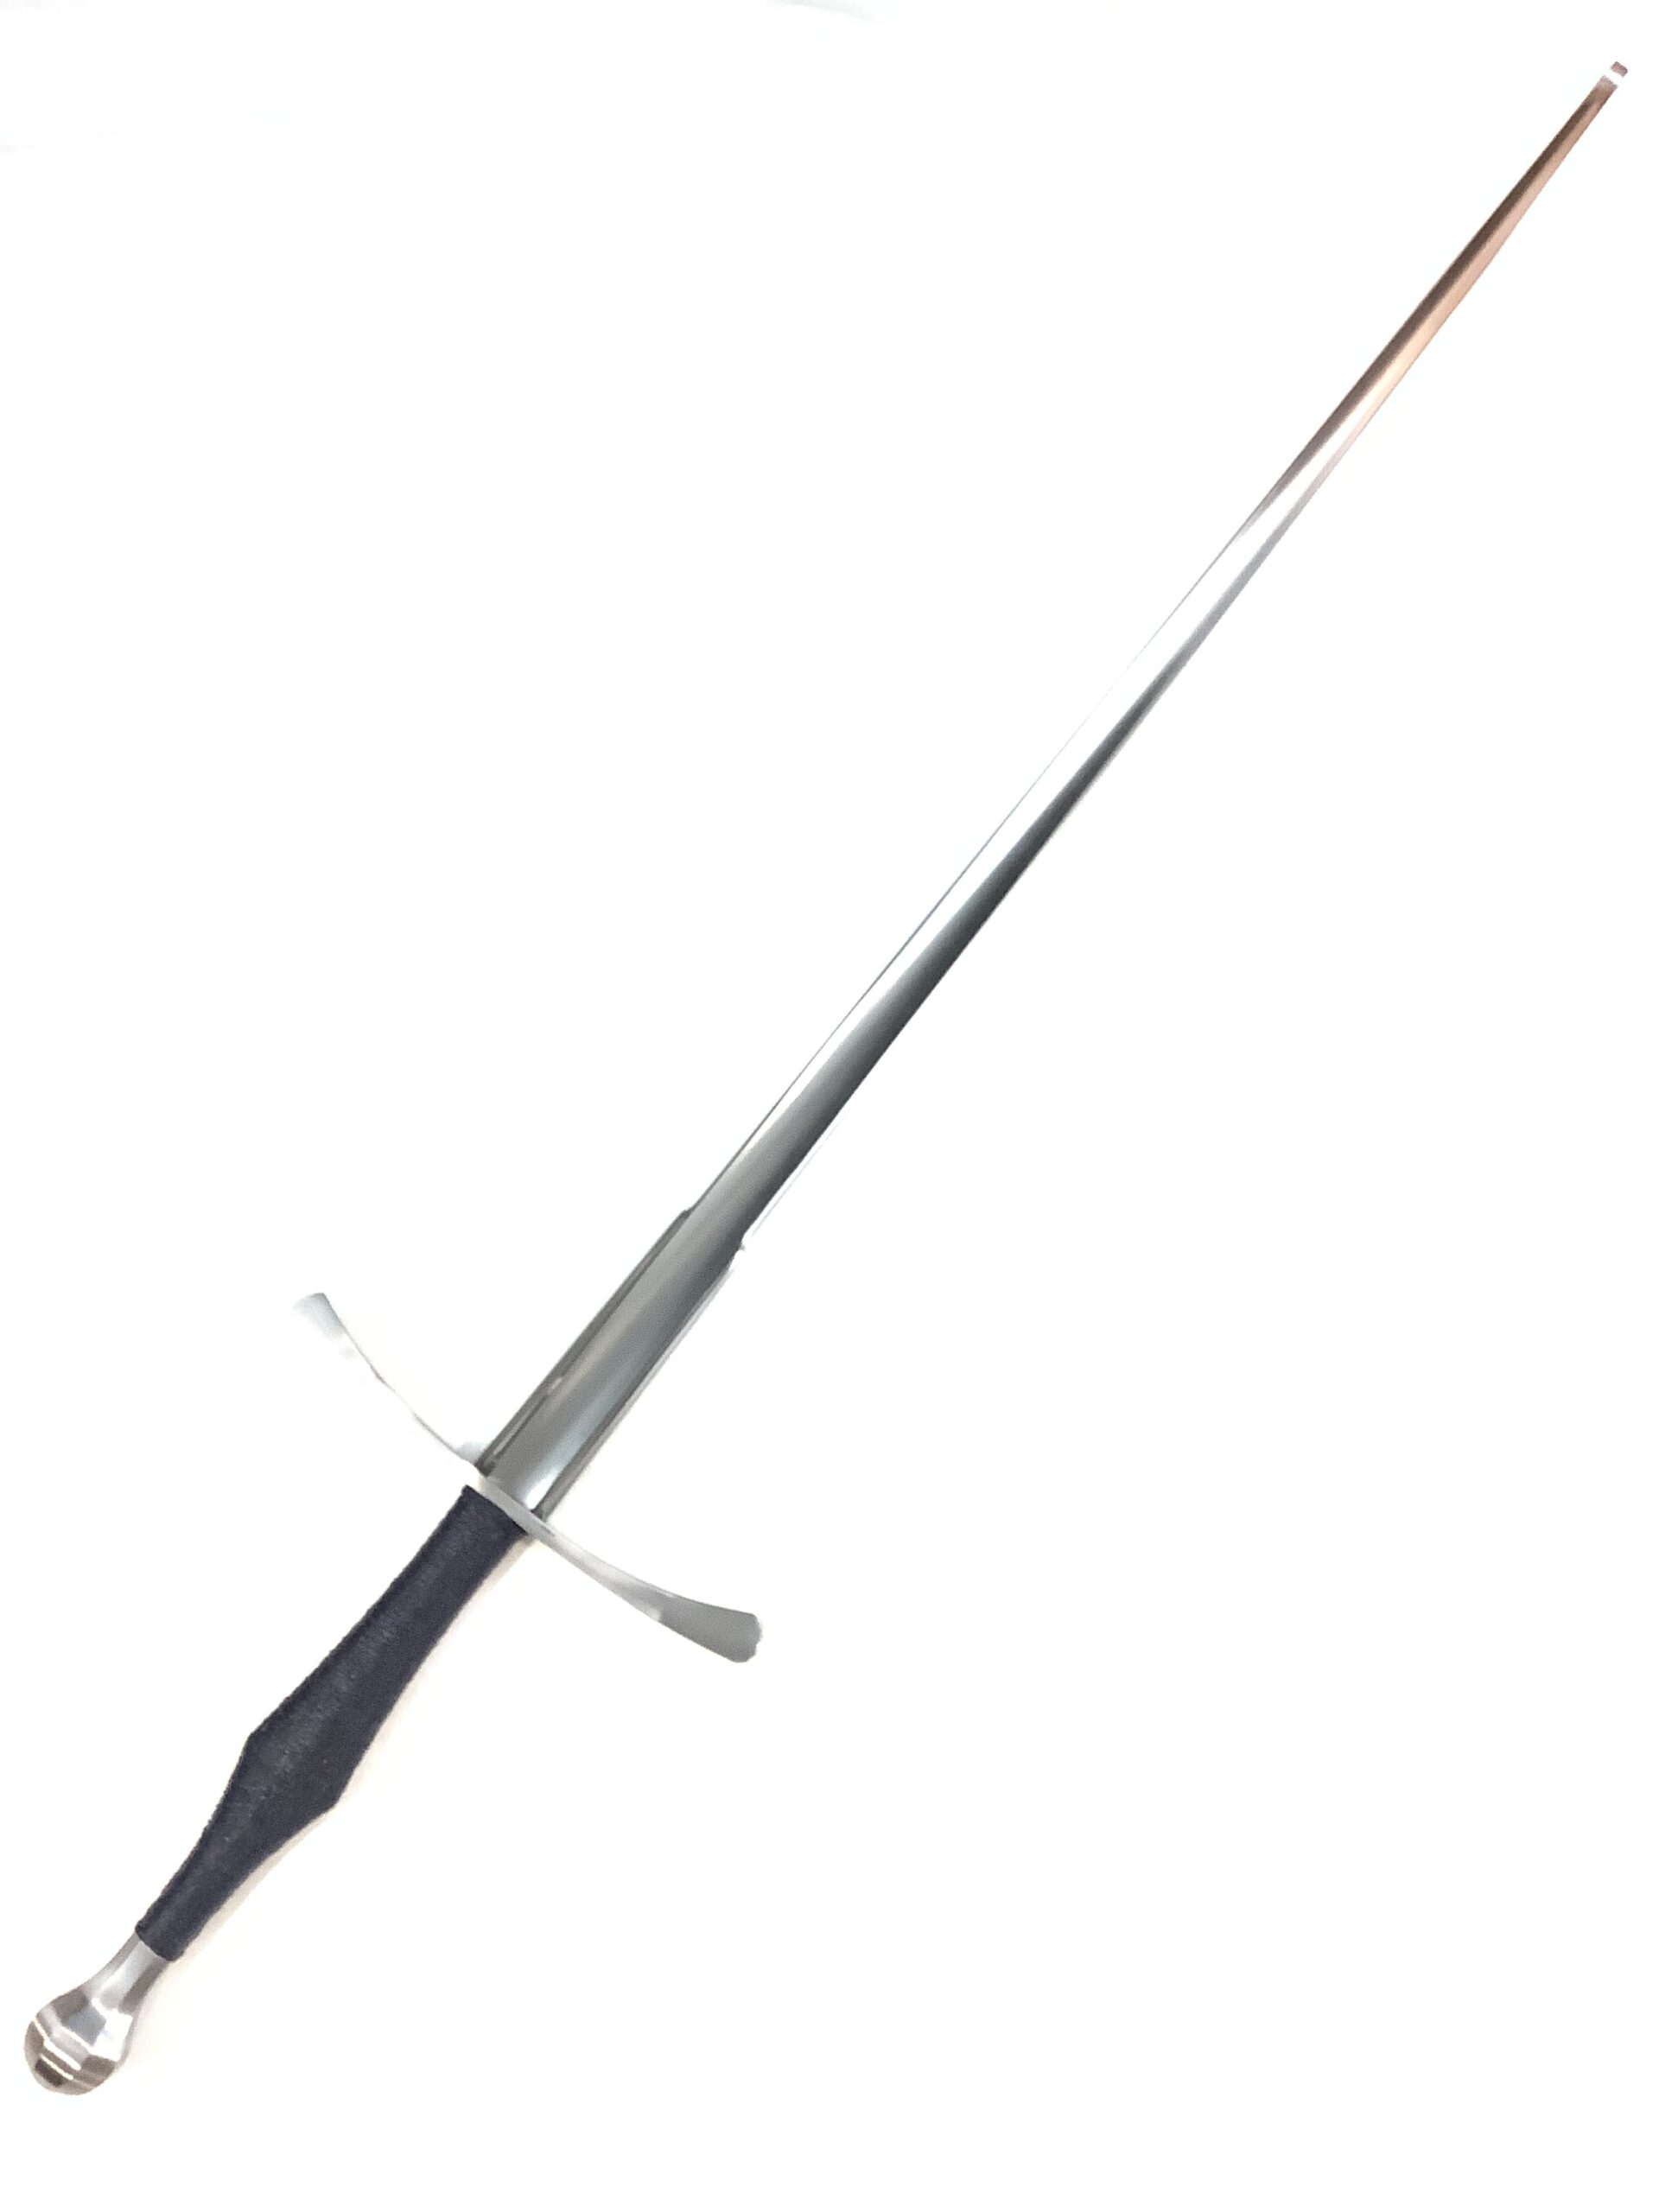 Chlebowski Fencing Sword III Midnight Blue (1)